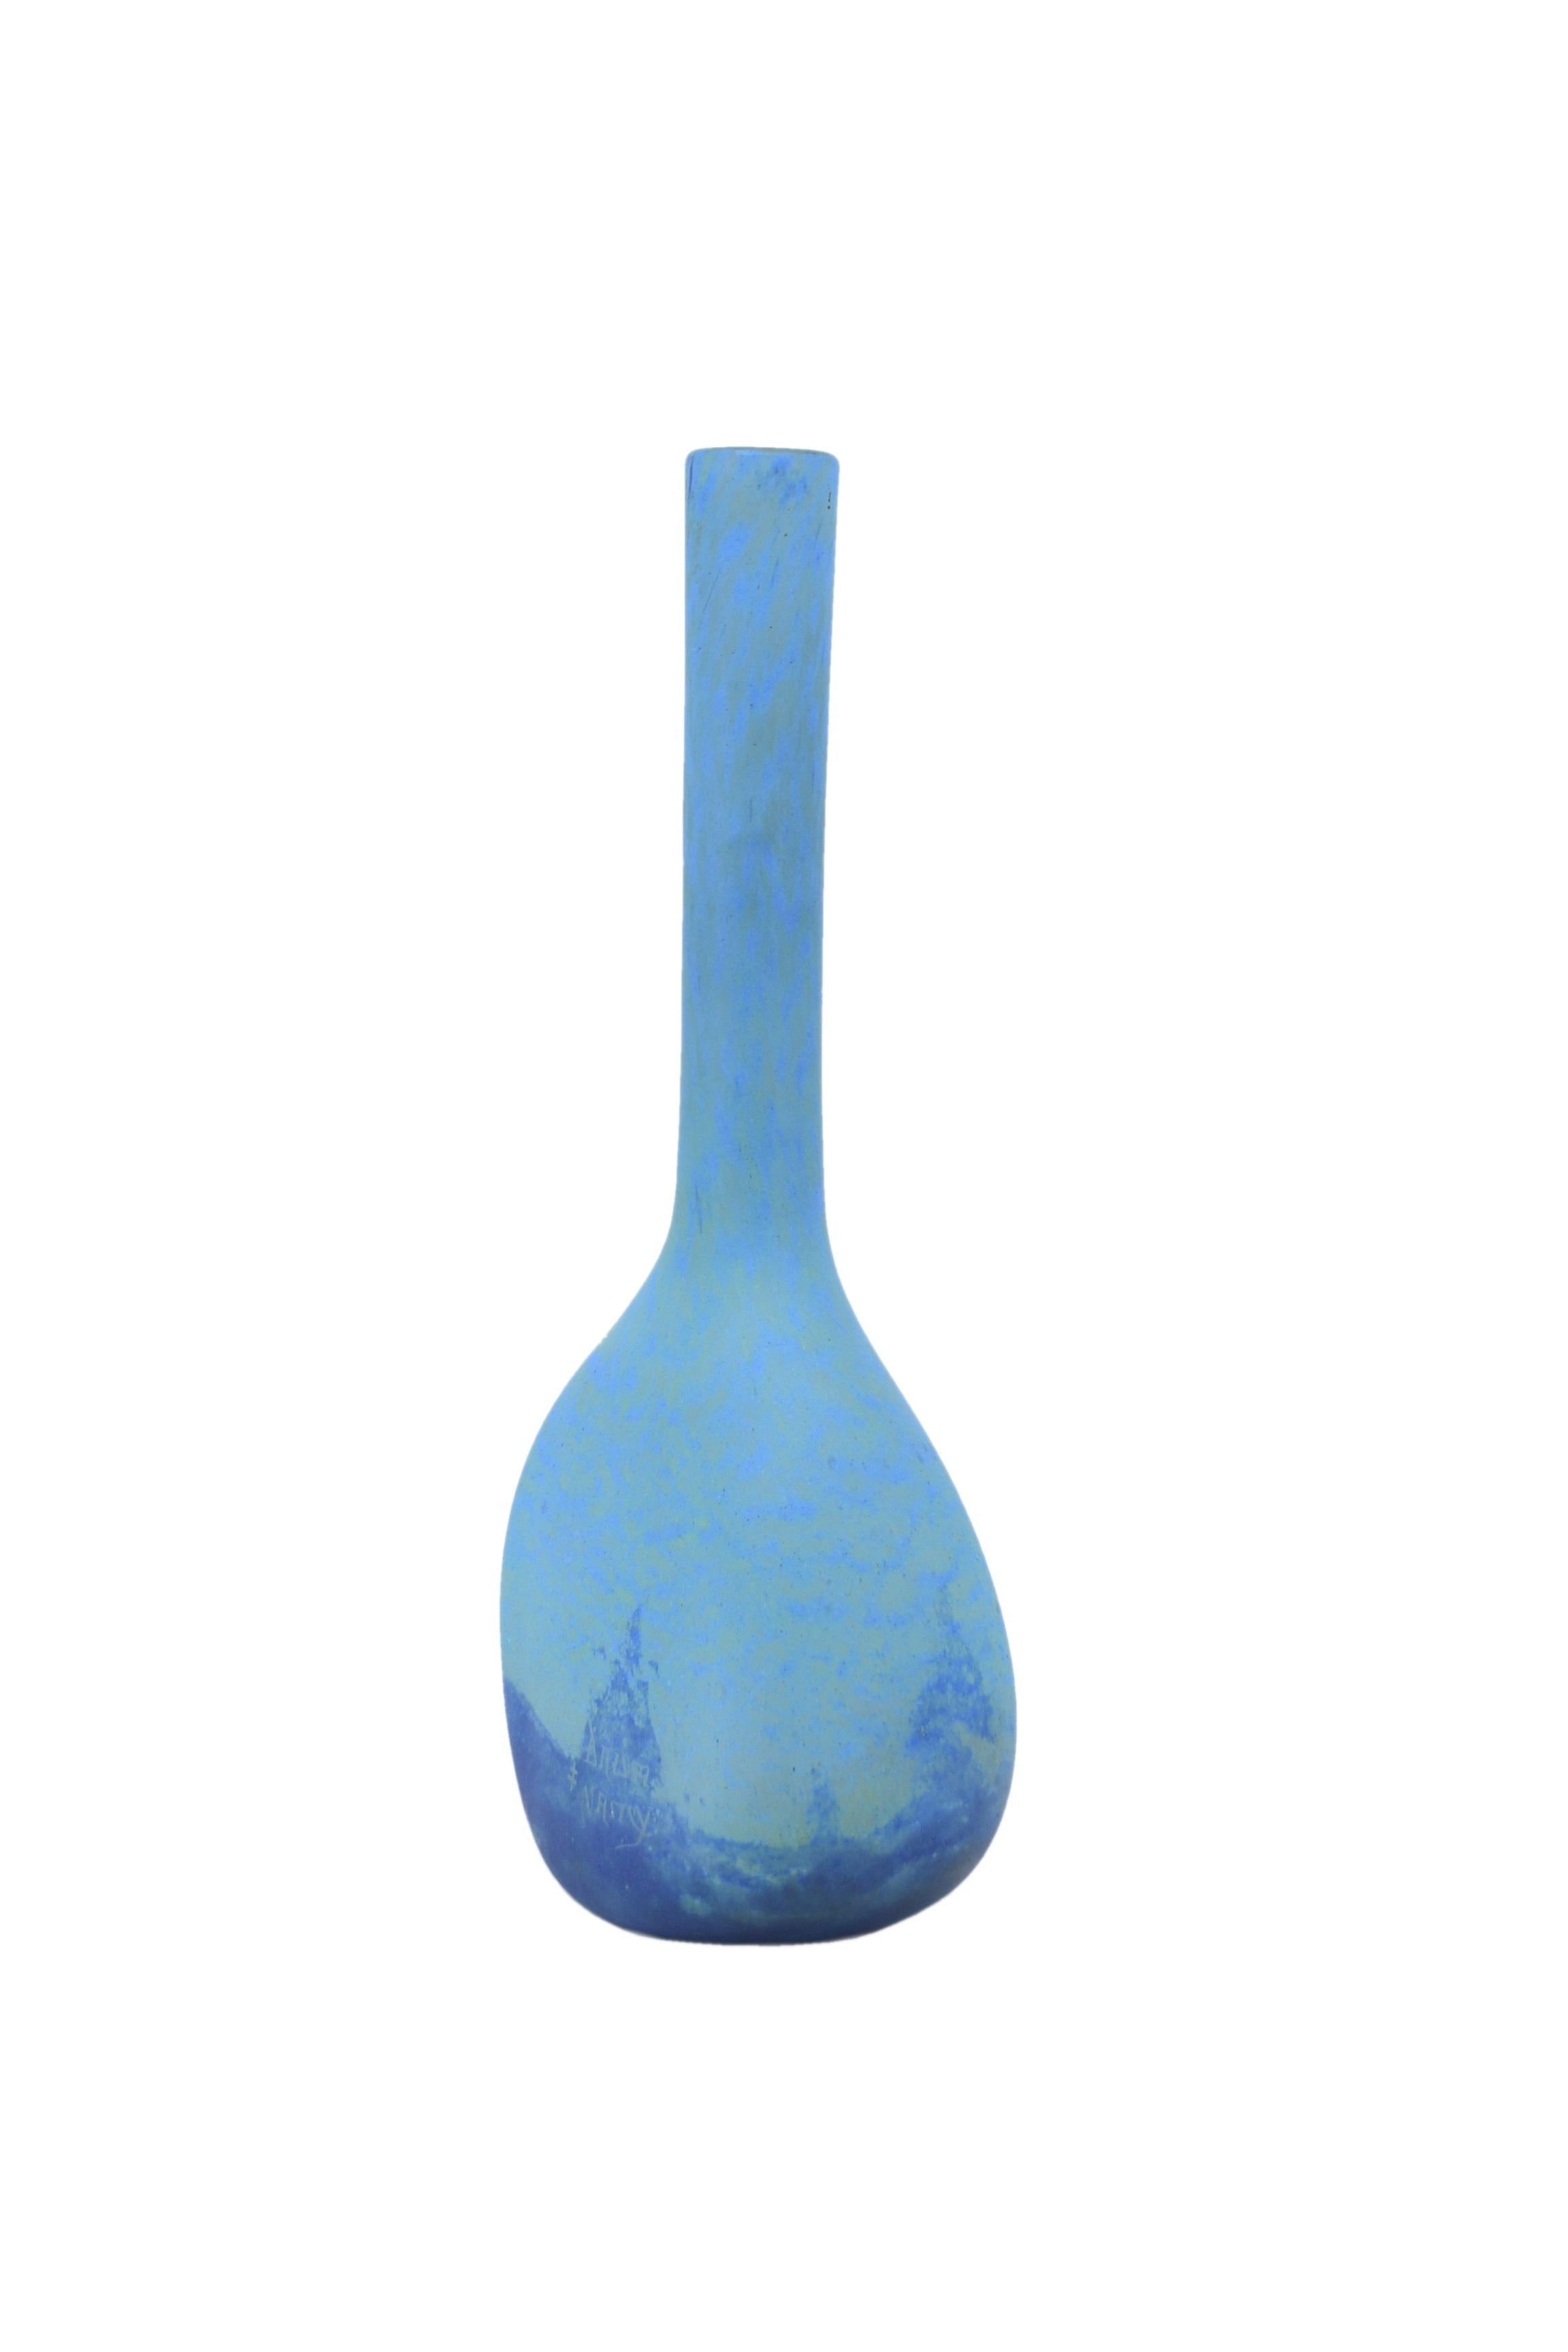 De la maison Daum à Nancy, un grand vase à long col et panse en verre soufflé Marmoreal bleu avec un très bel effet montagne et nuage.
Le vase est signé 